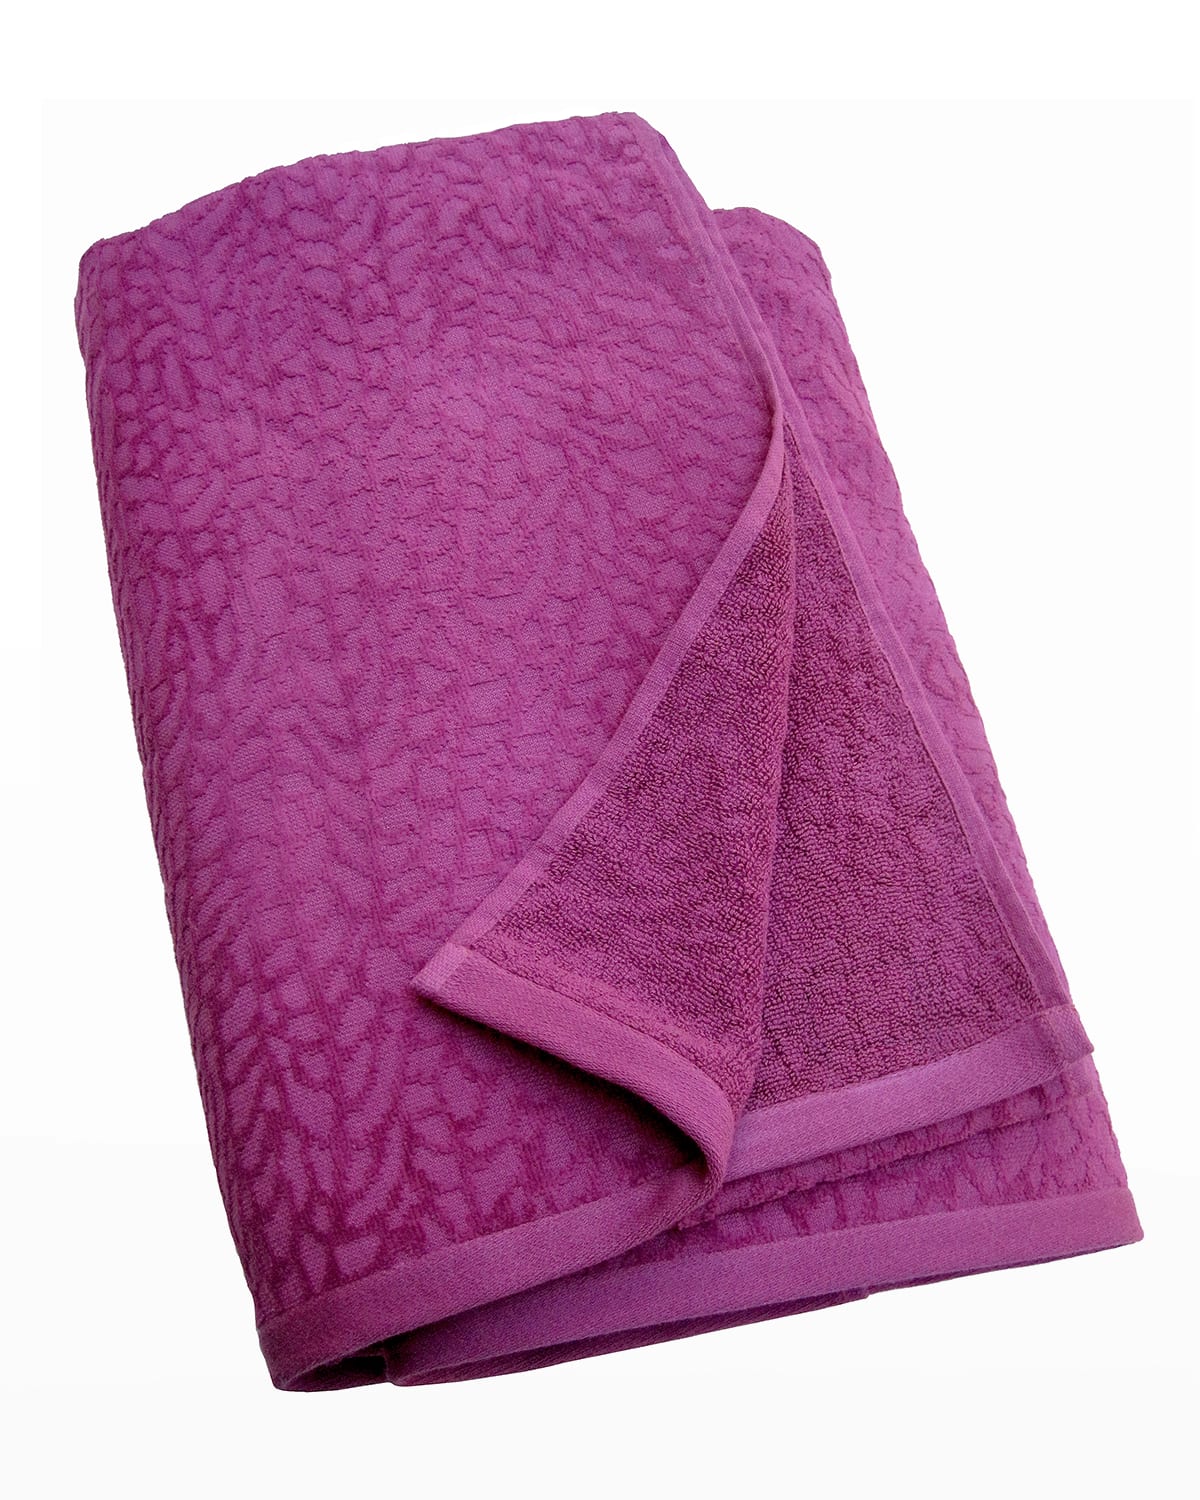 Affina Ventalina Beach Towel In Purple